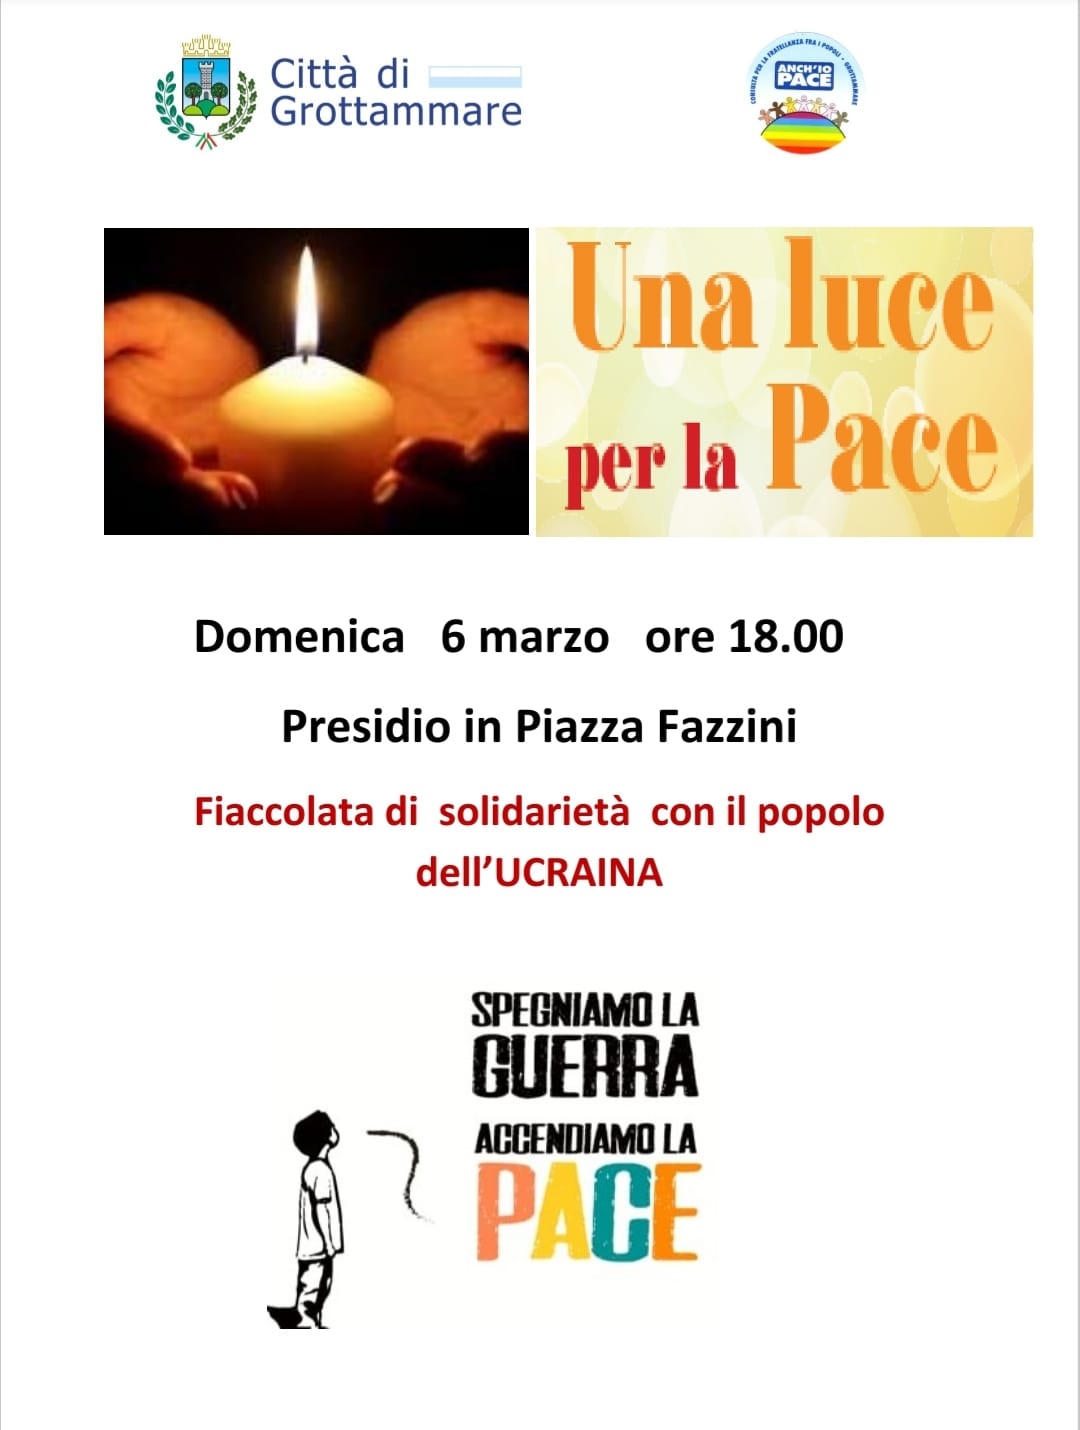 Una luce per la pace, presidio in piazza Fazzini a Grottammare